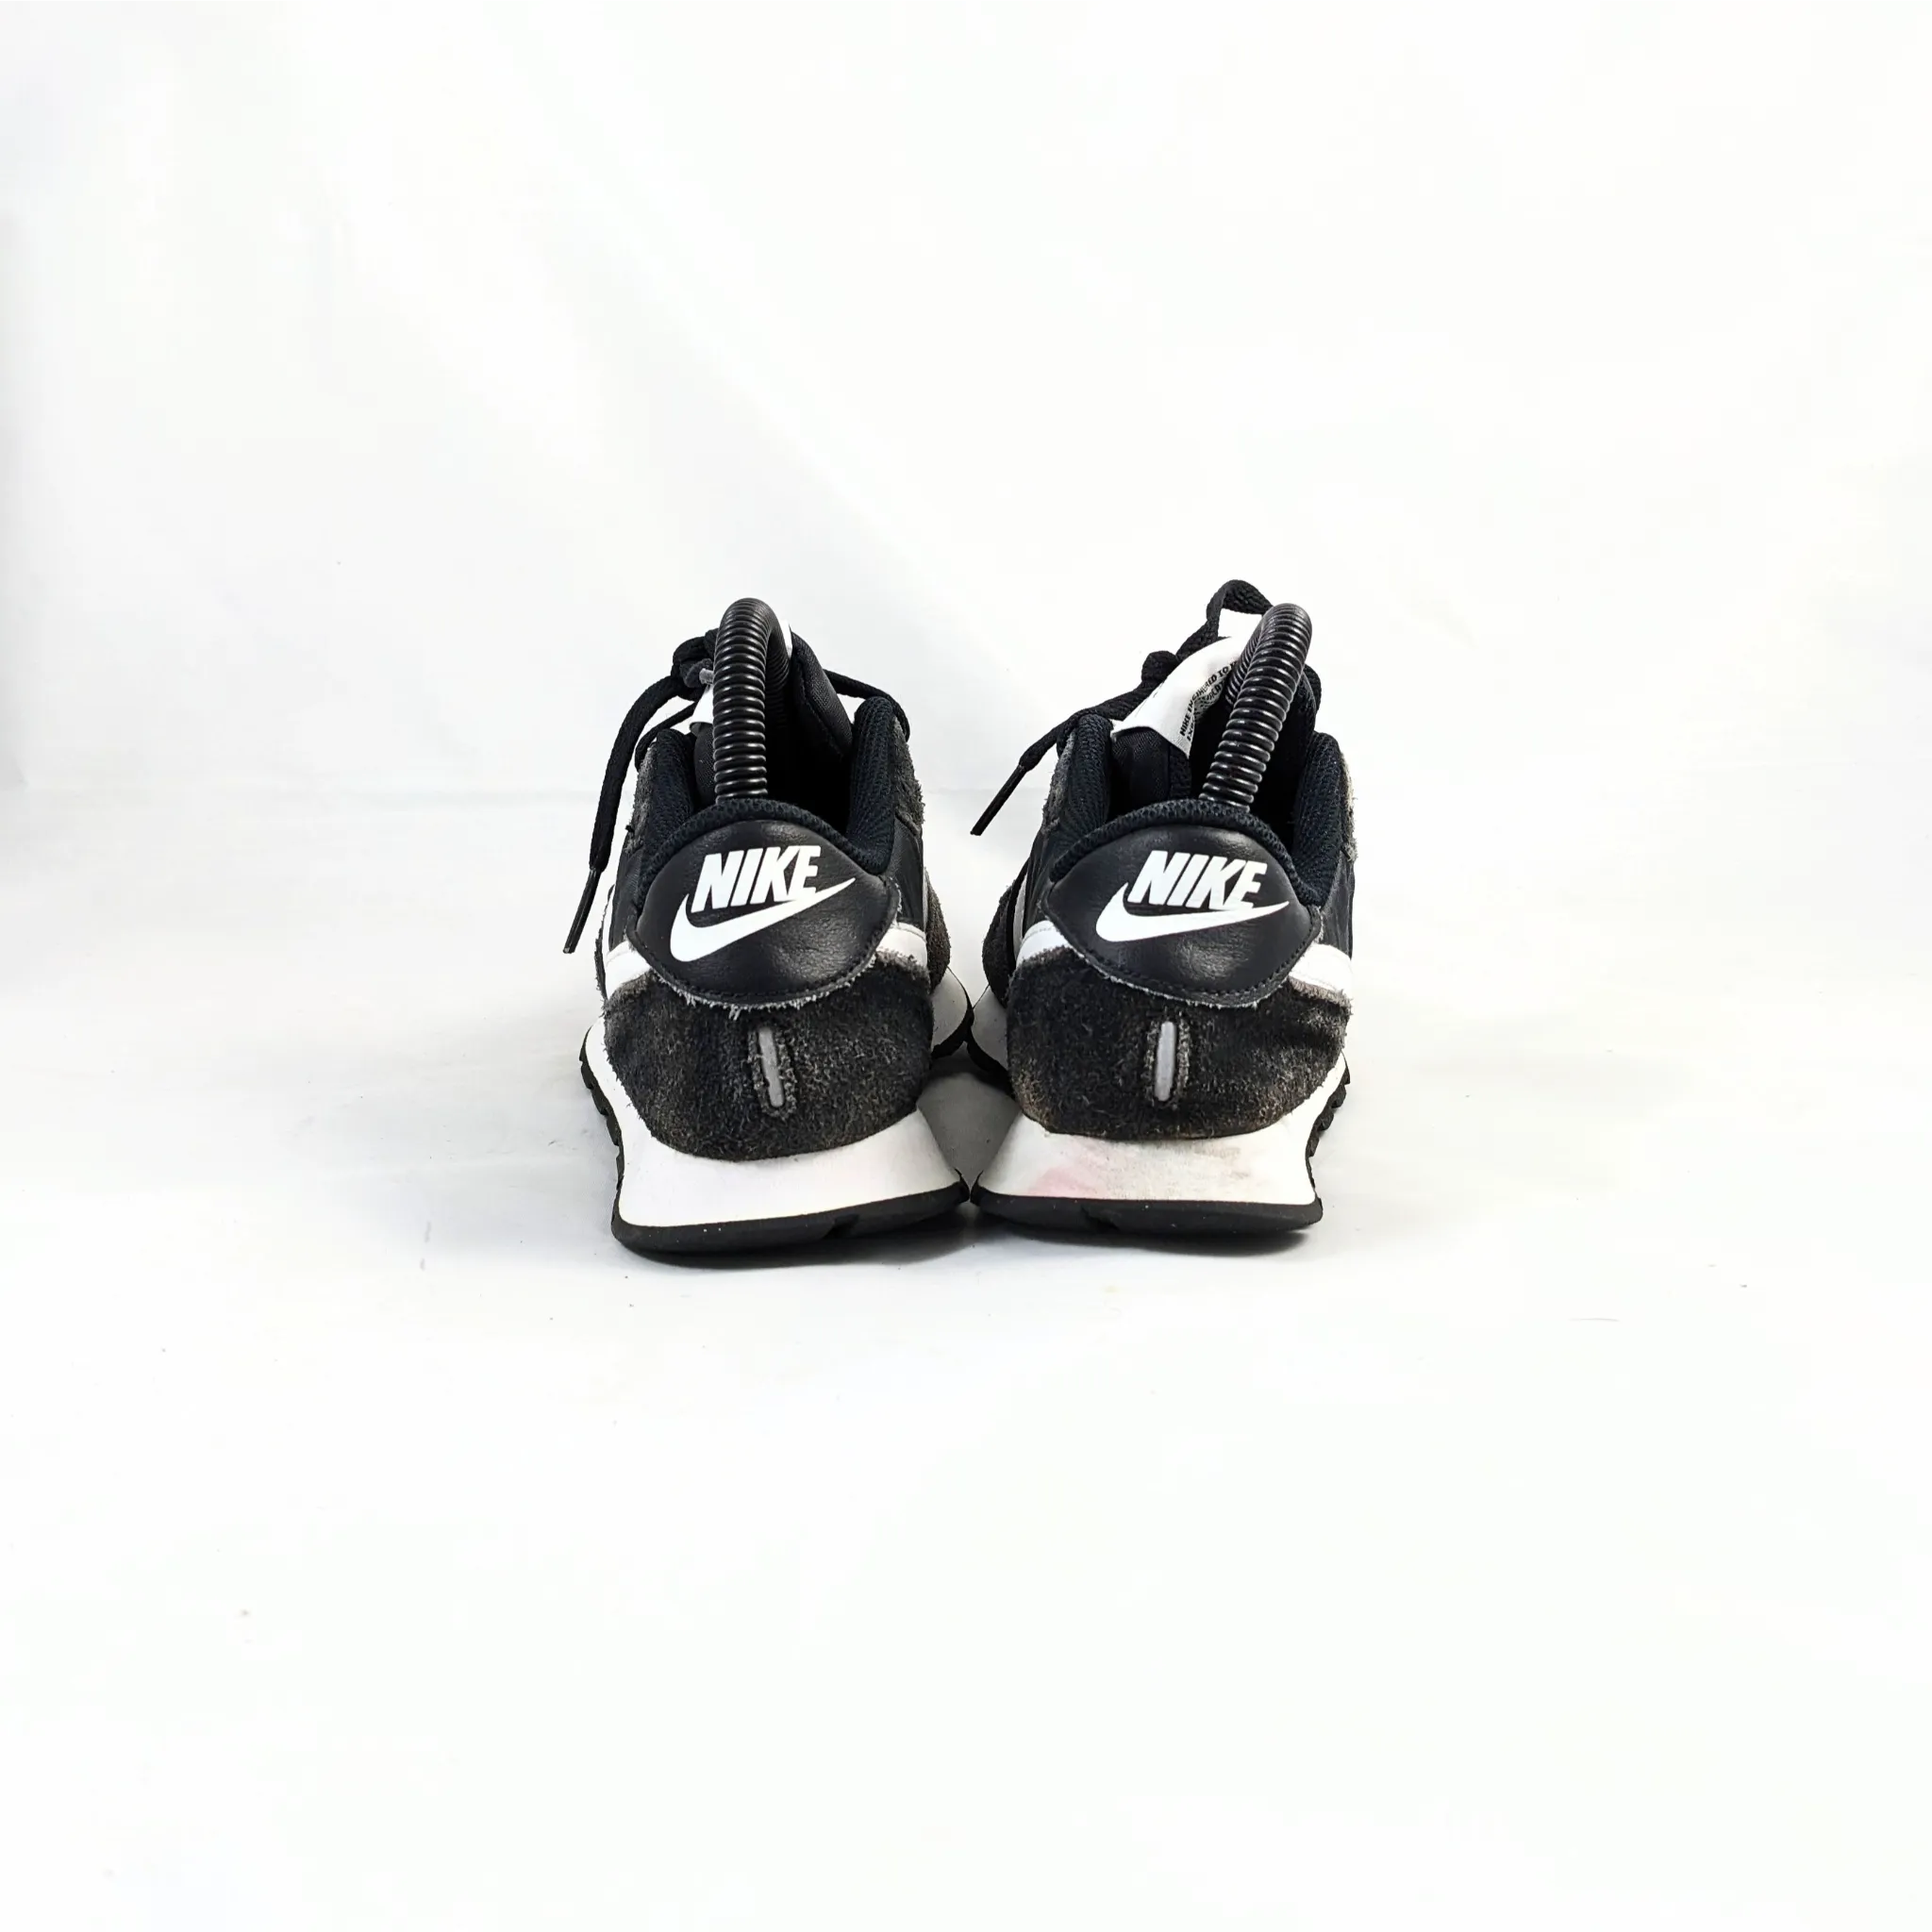 Nike Black Unisex Sneakers Online